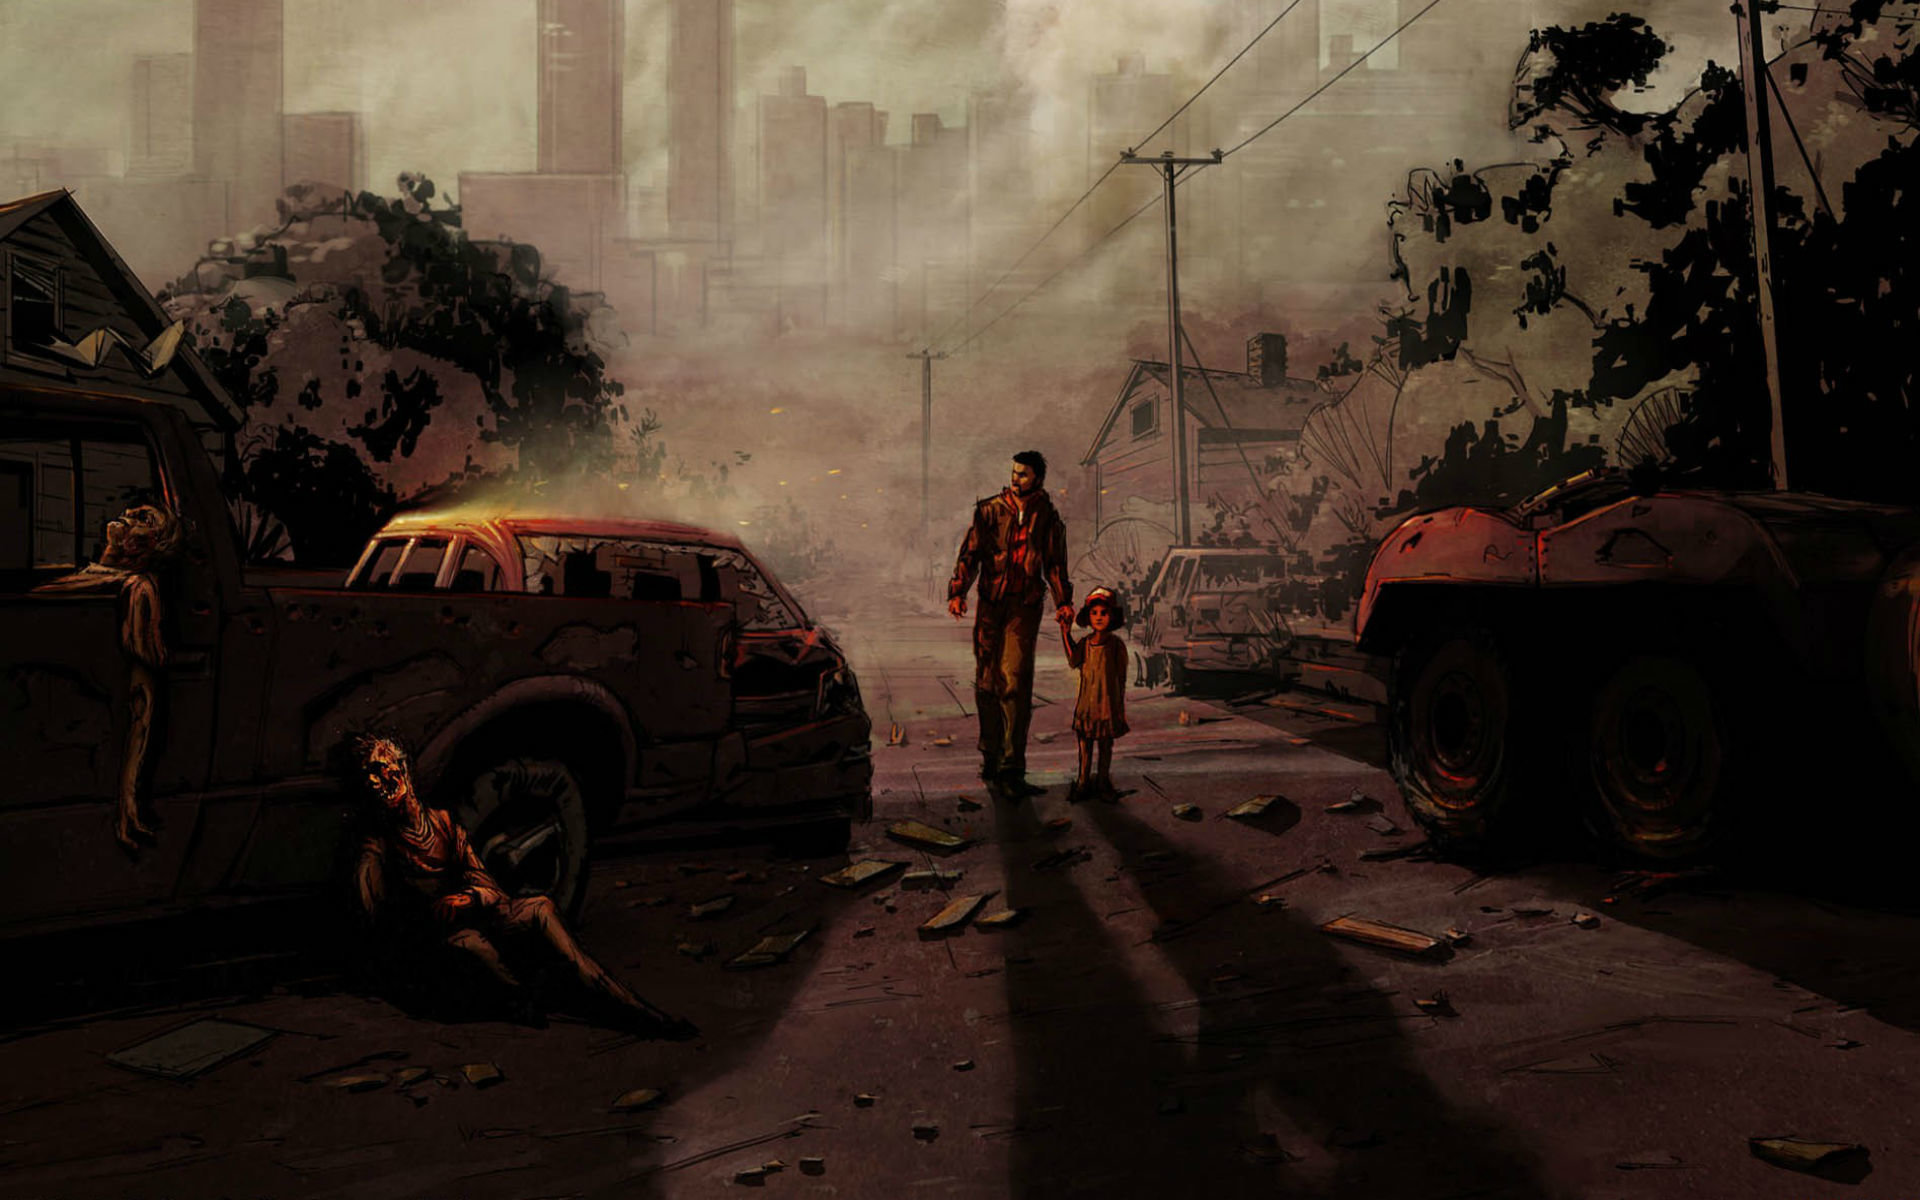 The Walking Dead Season 1 Wallpapers Hd For Desktop Backgrounds